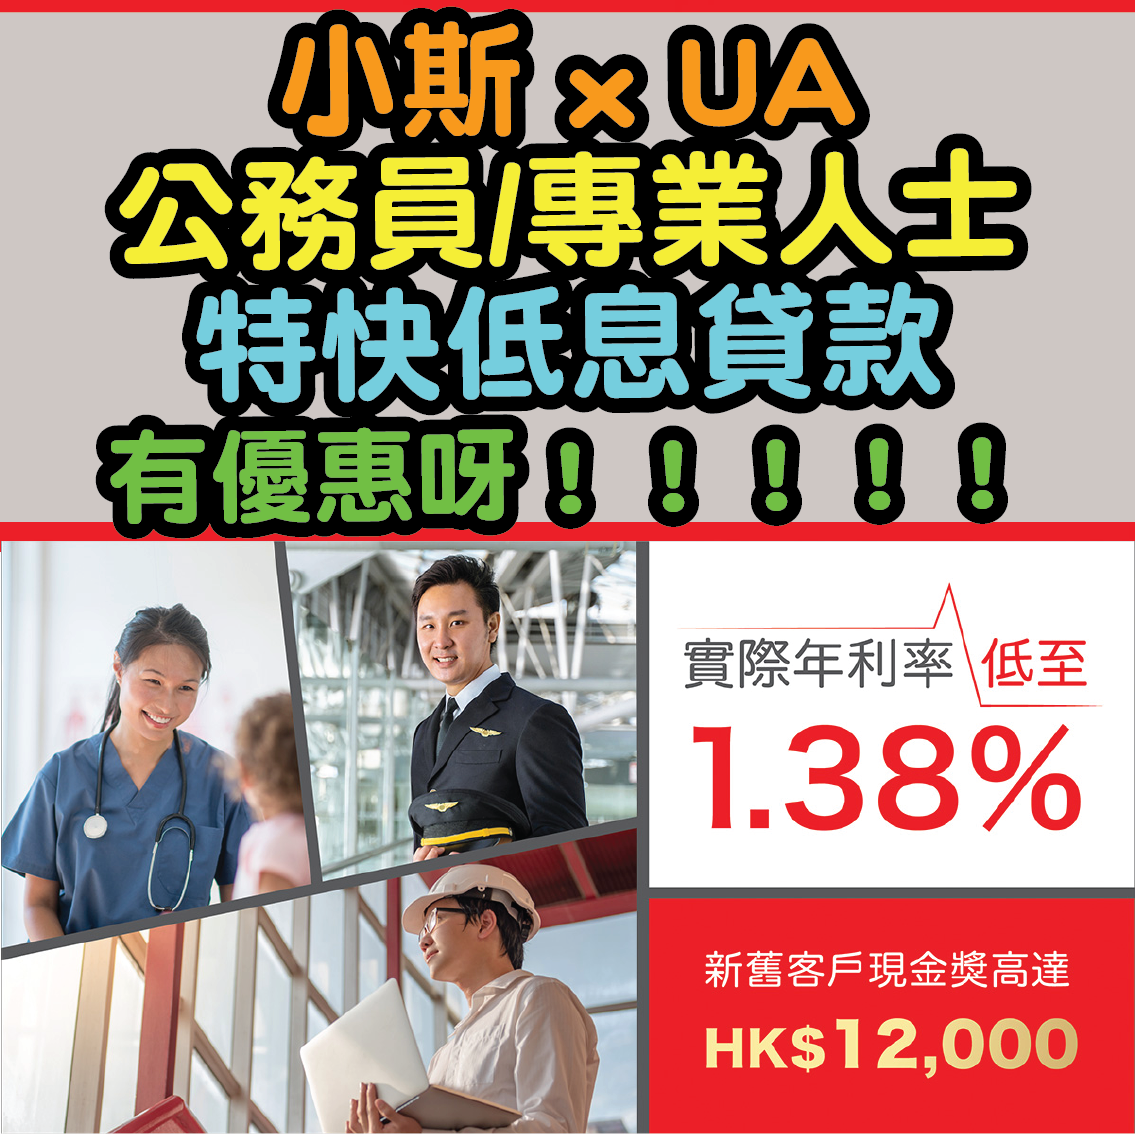 【小斯 x UA公務員/專業人士特快低息貸款優惠】現金獎*高達HK$12,000！實際年利率低至1.38%！隨時隨地網上申請現金即到手！